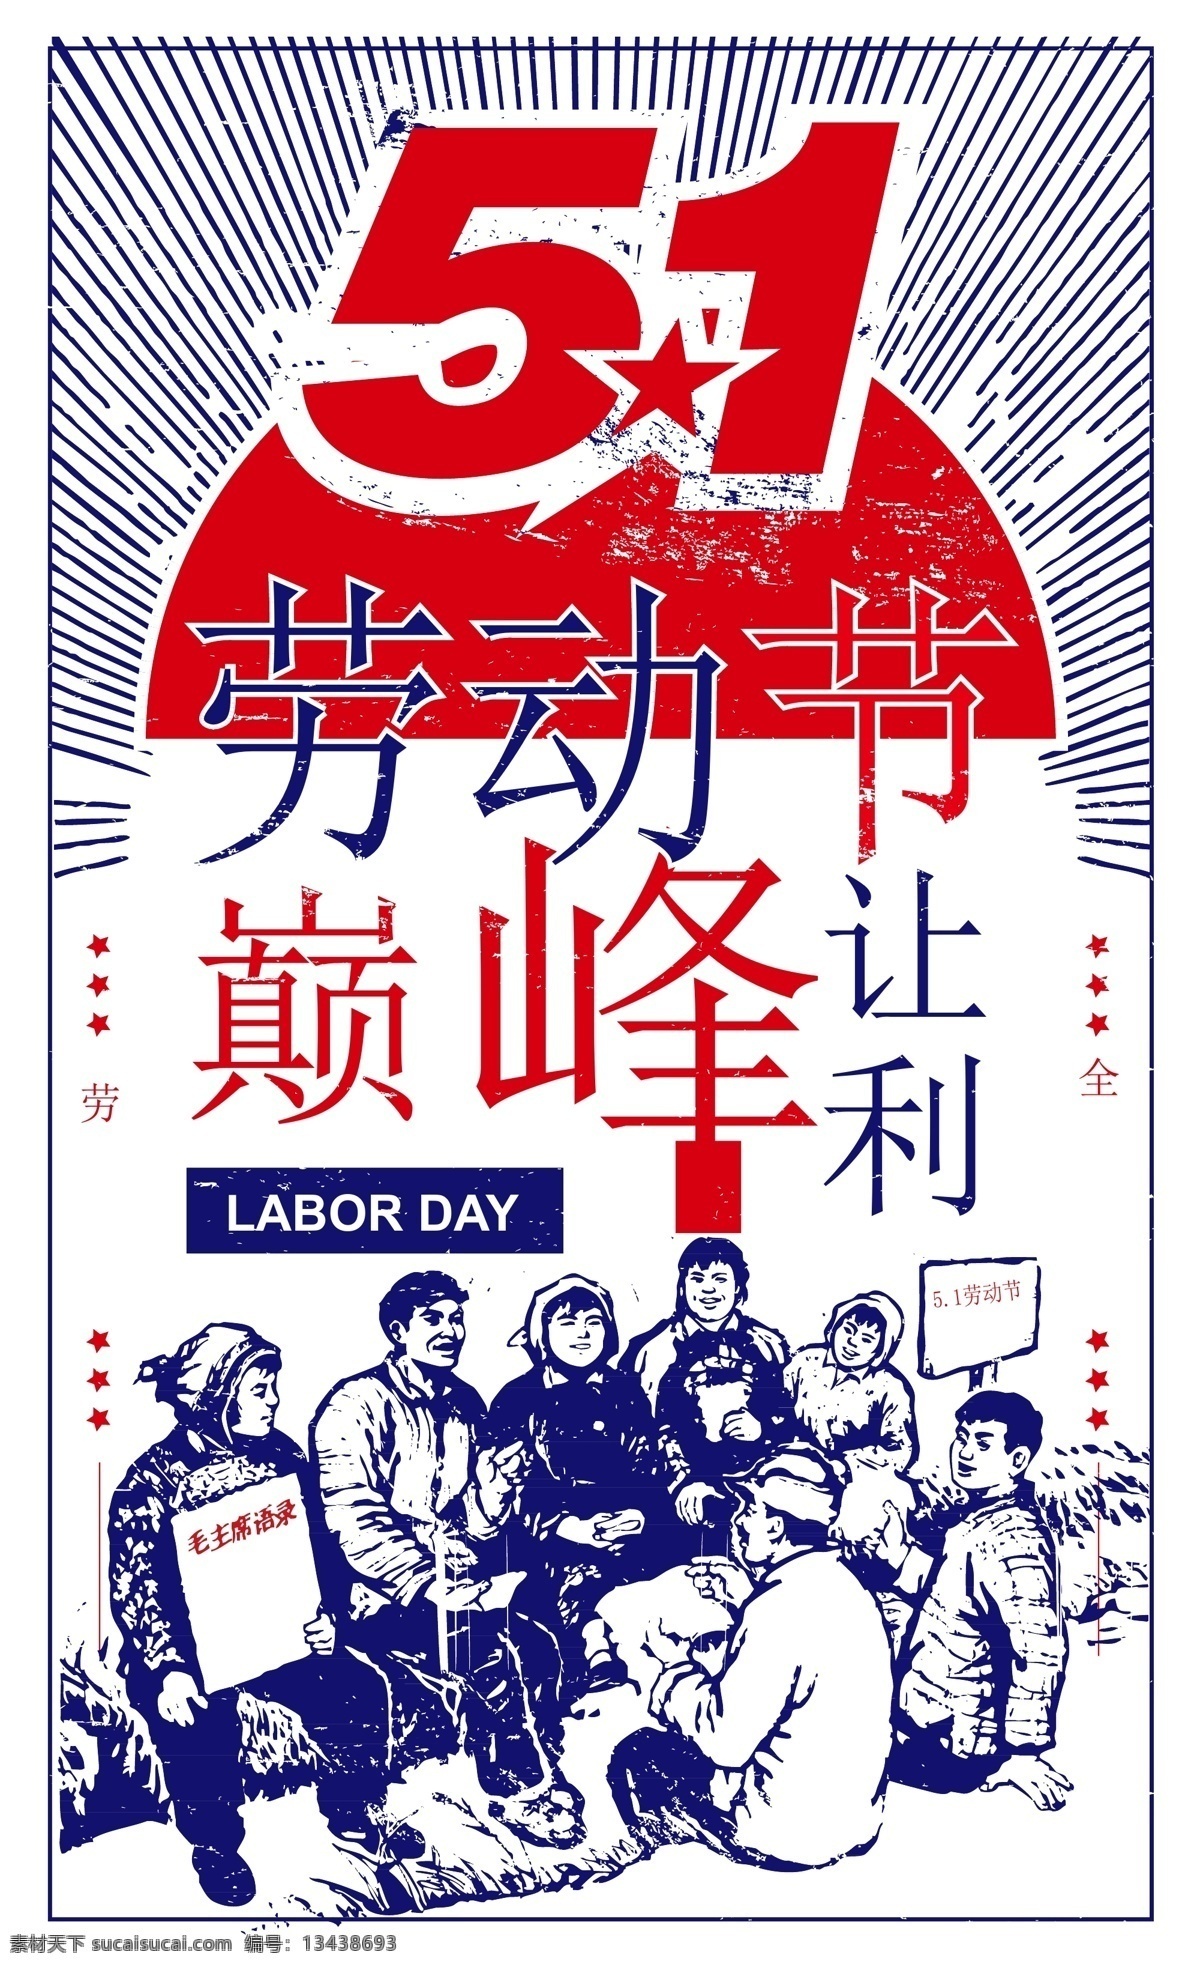 五一劳动节 创意 背景 五一 插画 节日 宣传 劳动节 背景模板 手绘 矢量